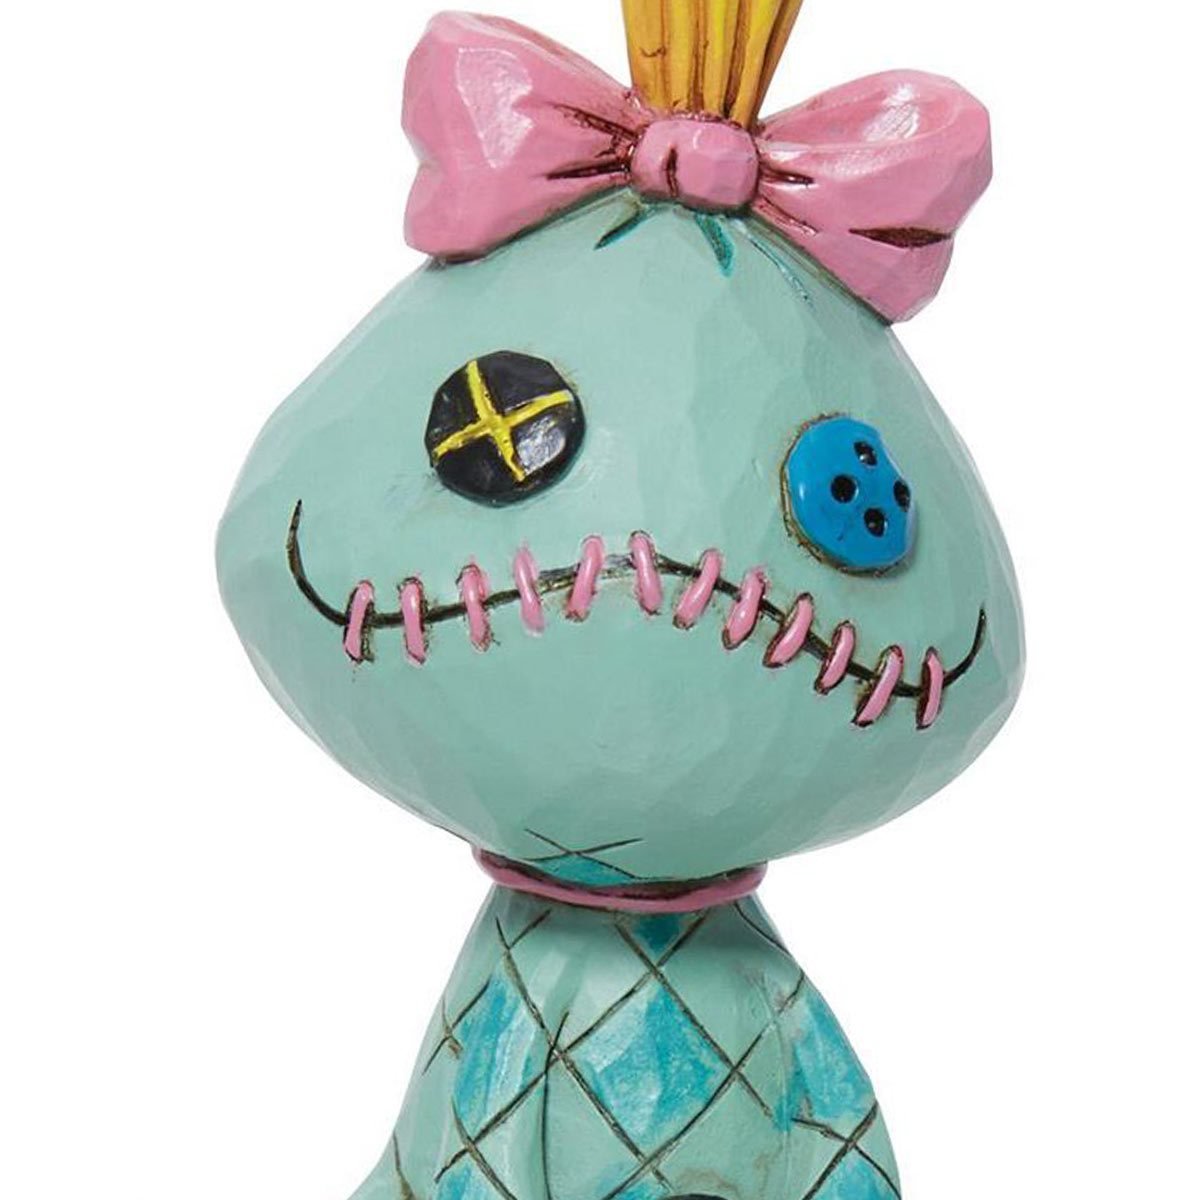 Lilo and stitch - scrump (lilos doll)